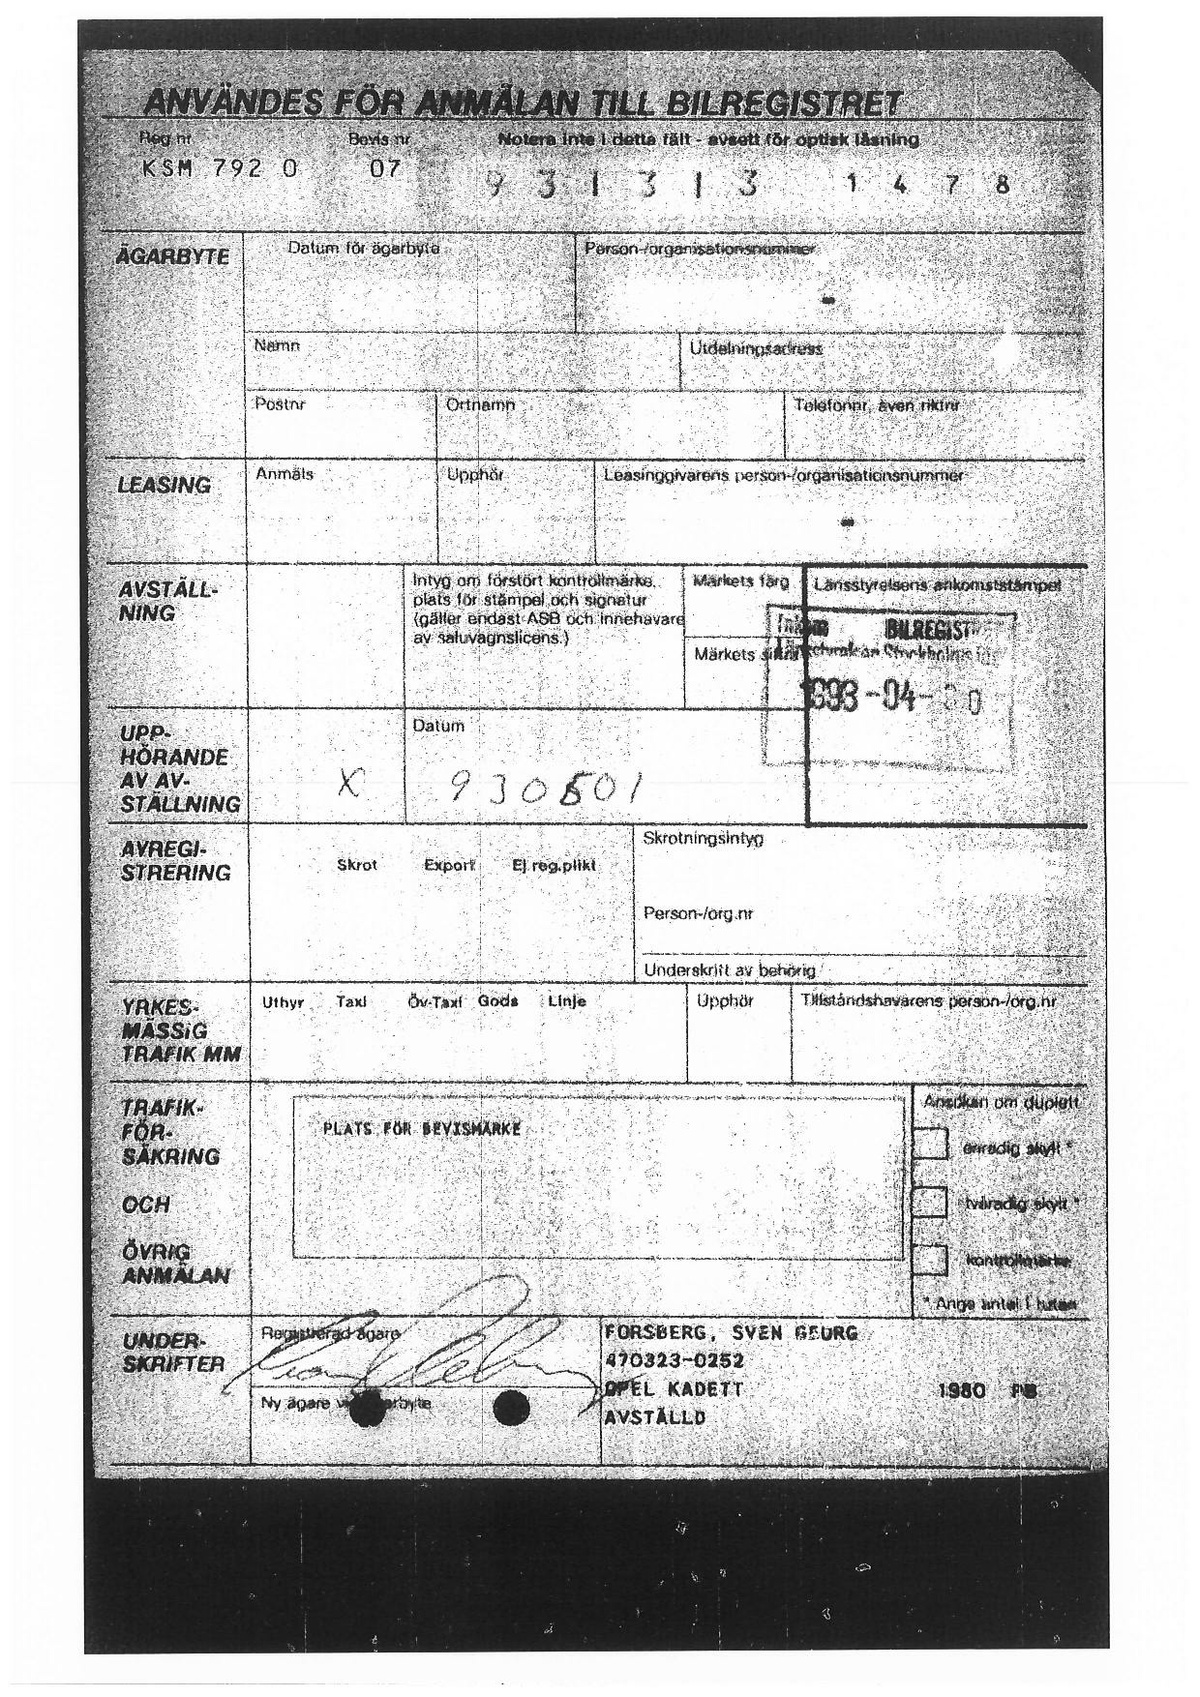 Pol-1980-01-01 D313-00 registeruppgifter-personbil-Opel-Kadett-KSM792.pdf